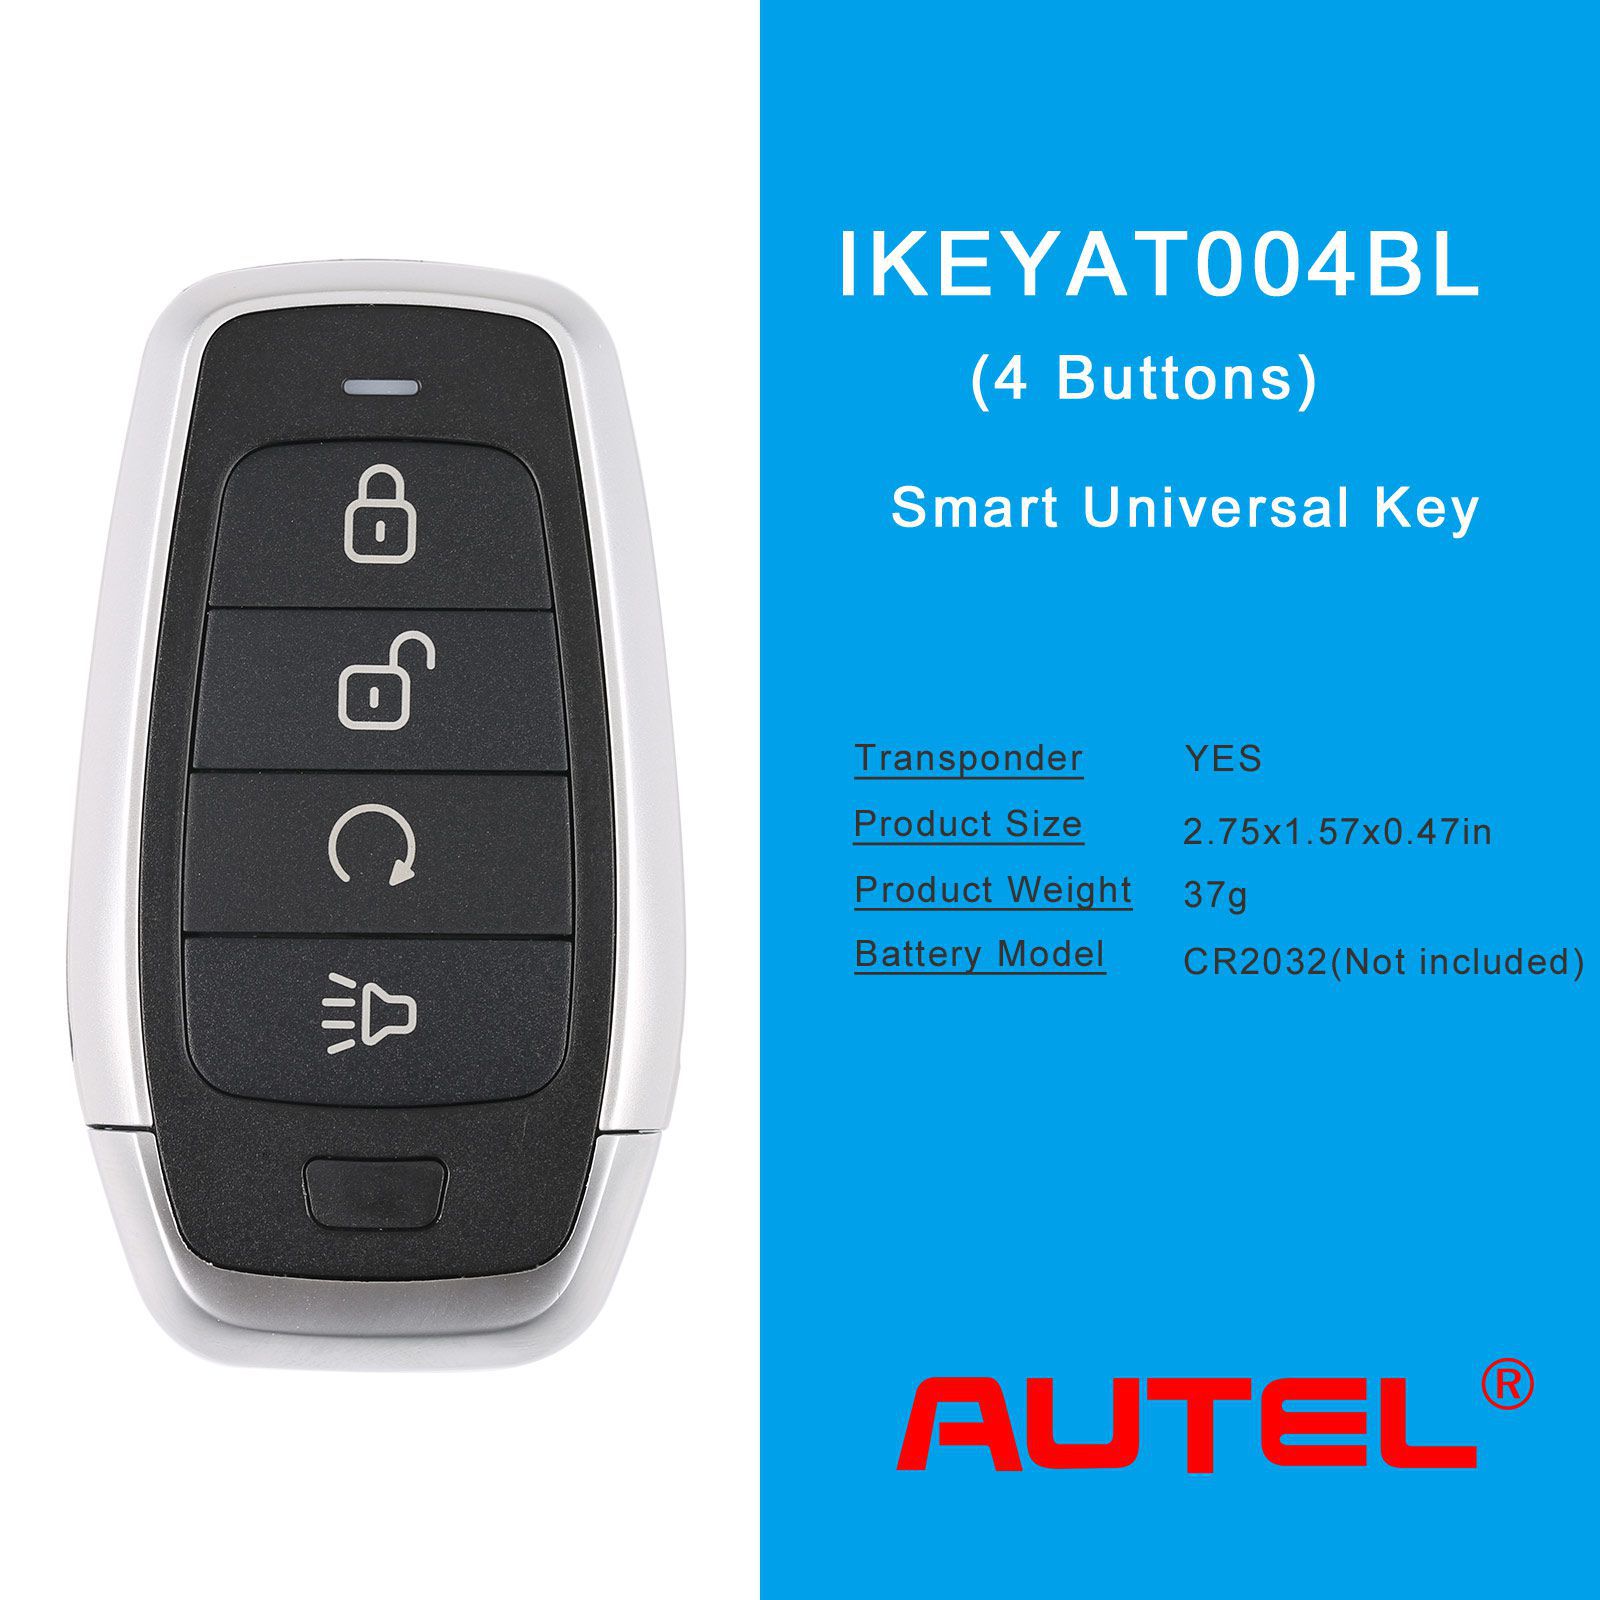 Autel ikeyat004bl 4 boutons clés intelligentes universelles indépendantes 5pcs / lot